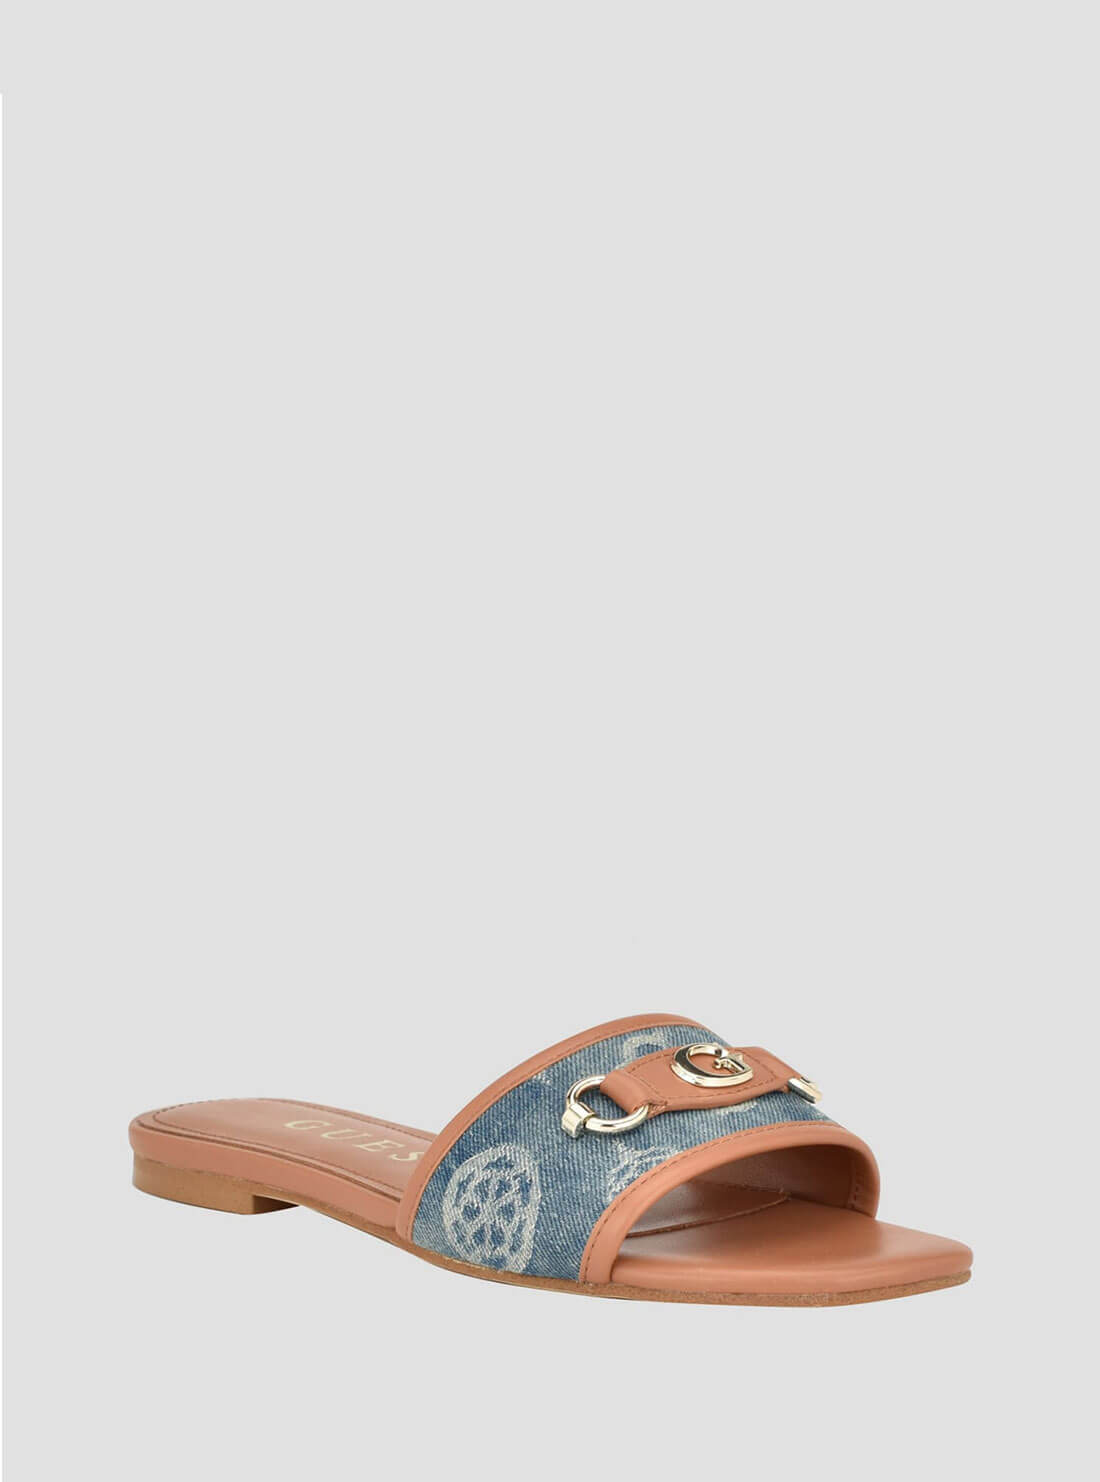 Blue Denim Logo Hammi Slide Sandals | GUESS Women's Shoes | front view